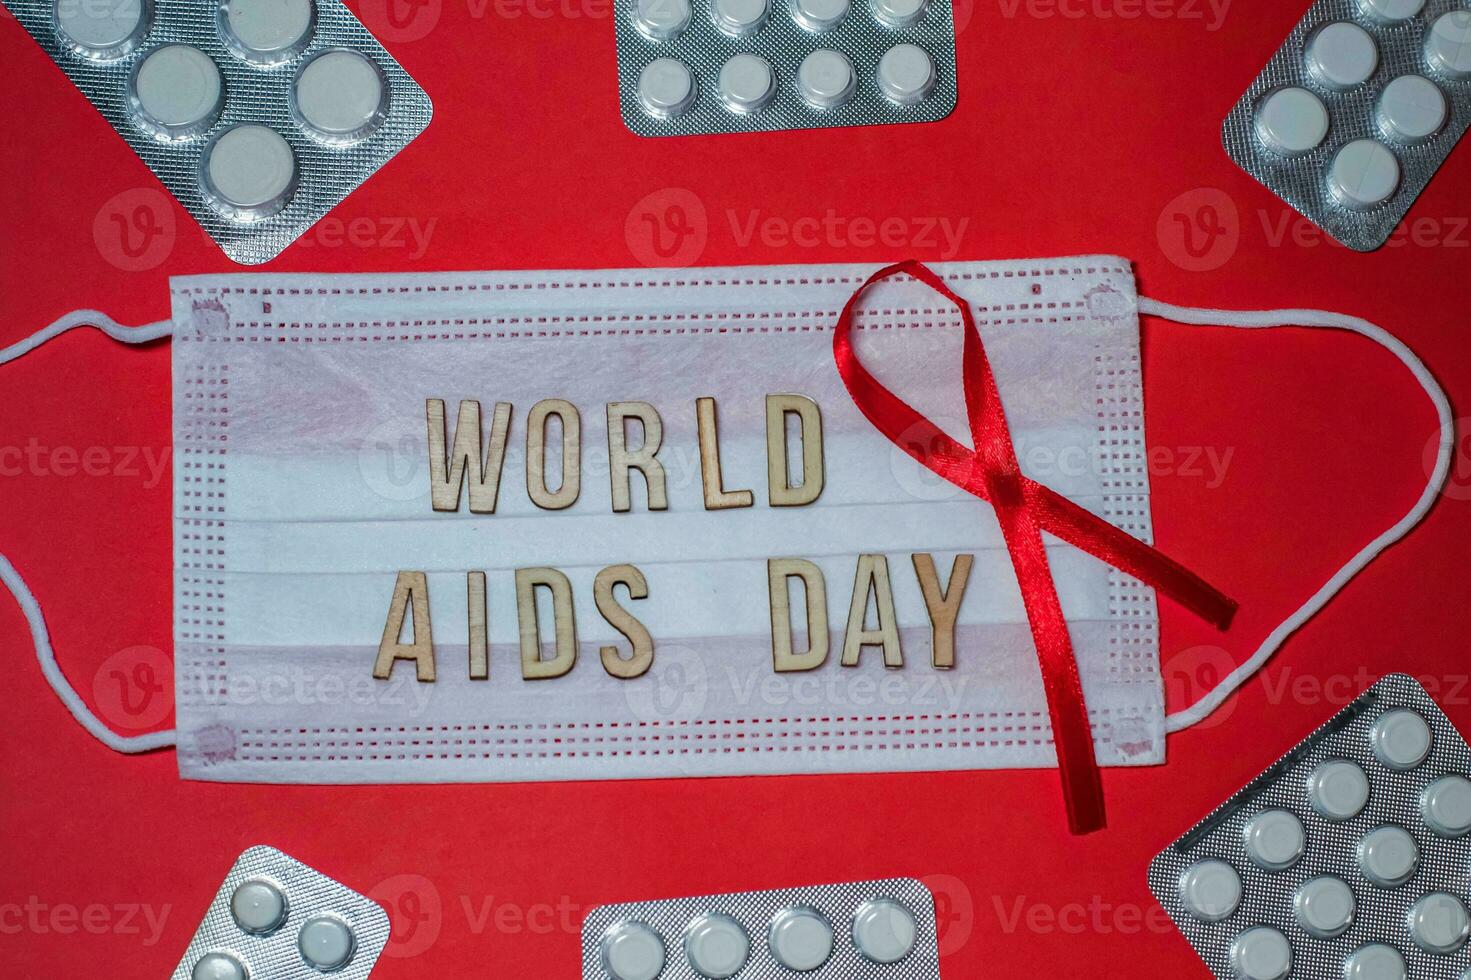 mundo SIDA día es fraseología en protector médico mascarilla. rojo cinta y pastillas en ampolla en rojo antecedentes foto